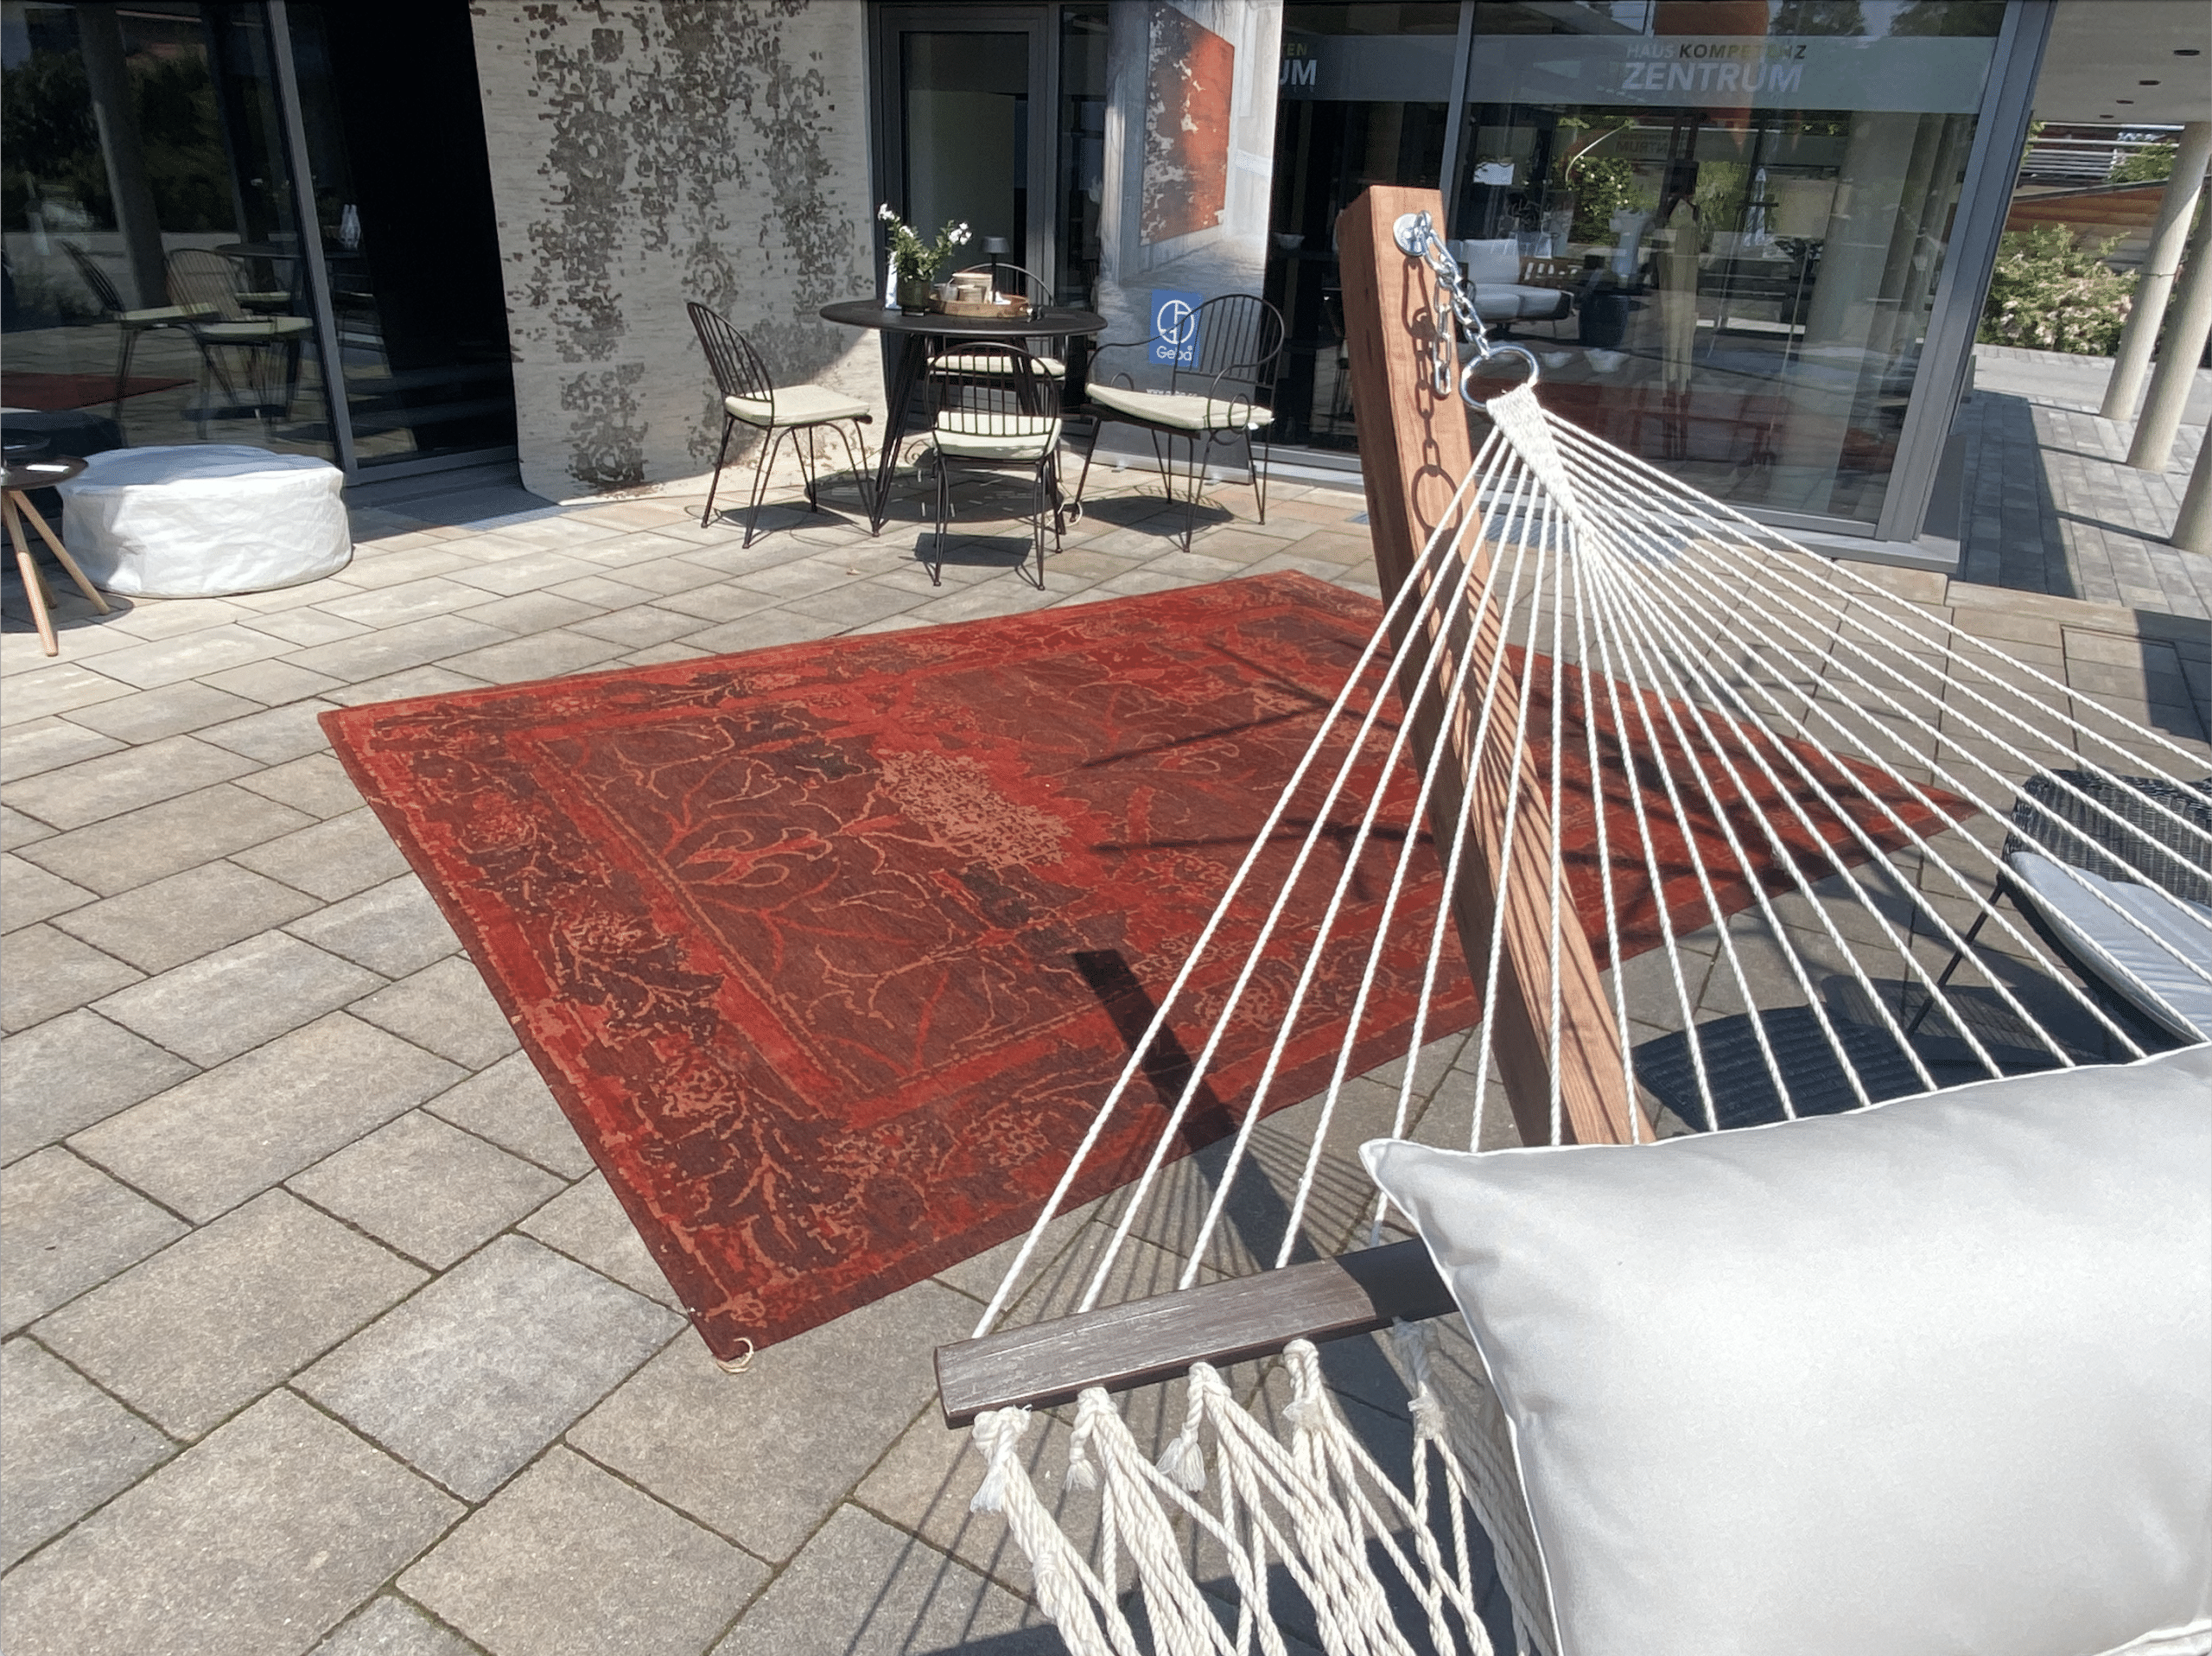 Geba Teppich Donegal red auf dem Boden liegend neben einer Hängematte